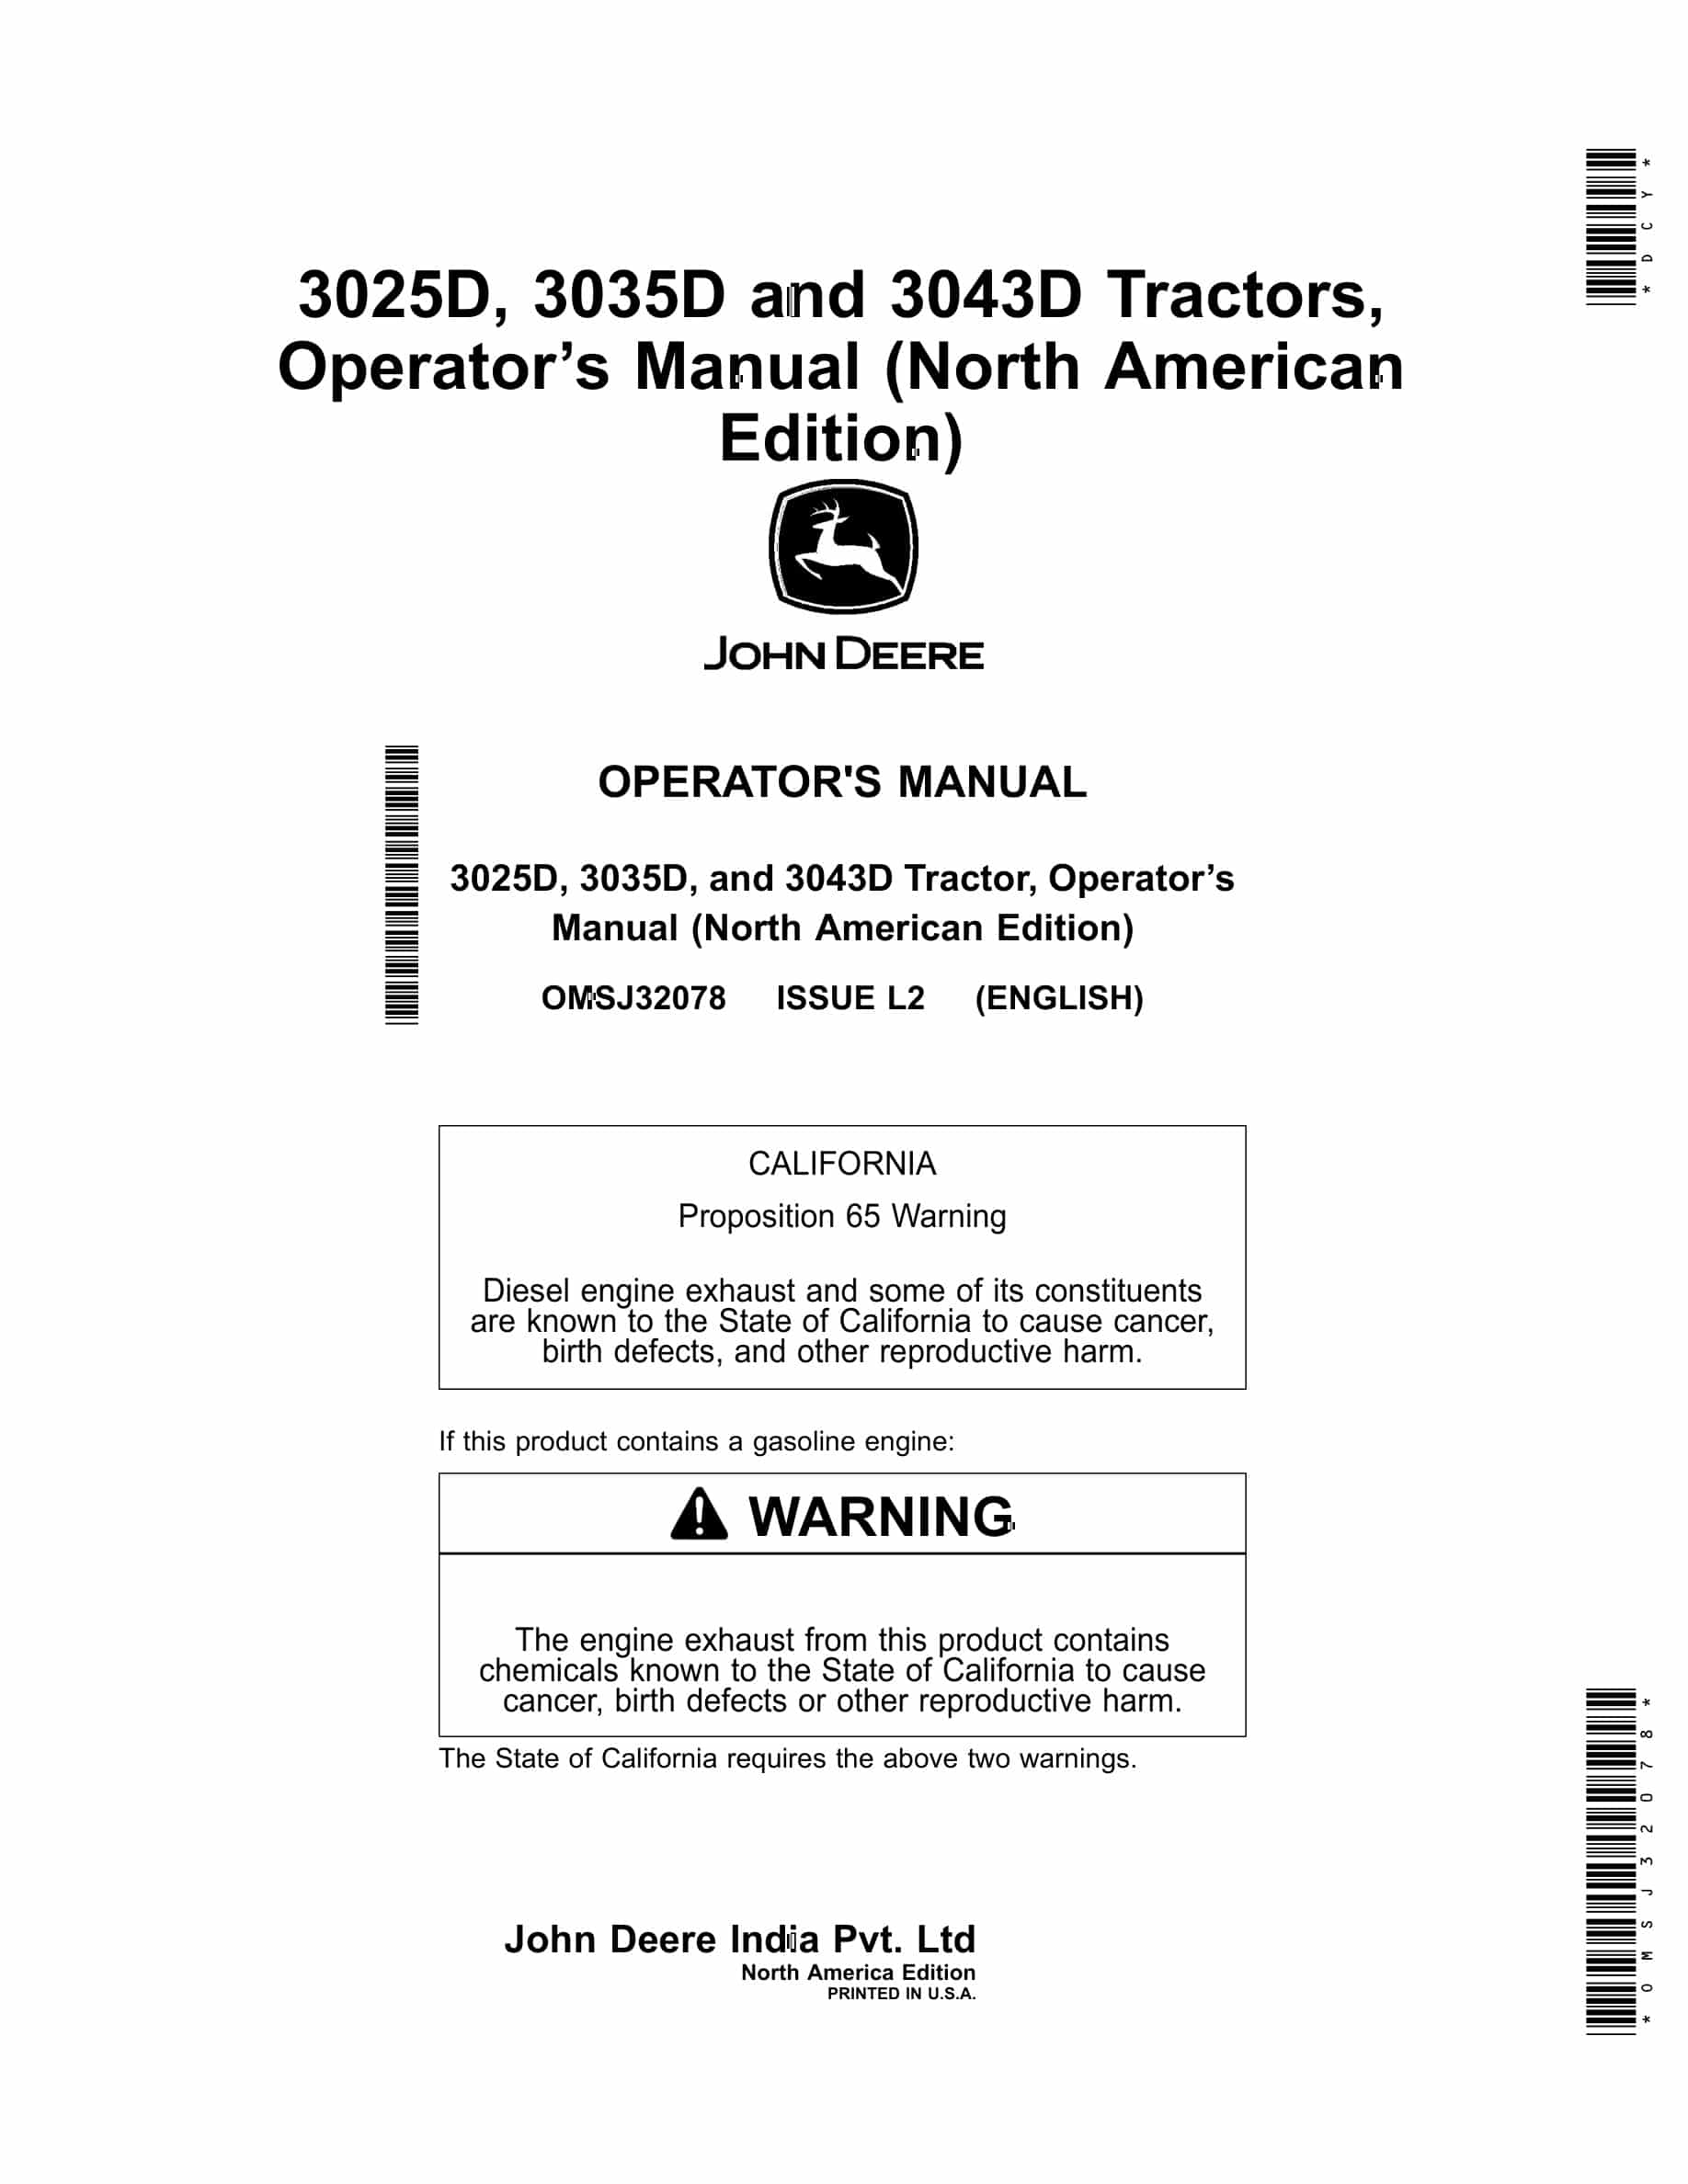 John Deere 3025d, 3035d And 3043d Tractors Operator Manuals OMSJ32078-1